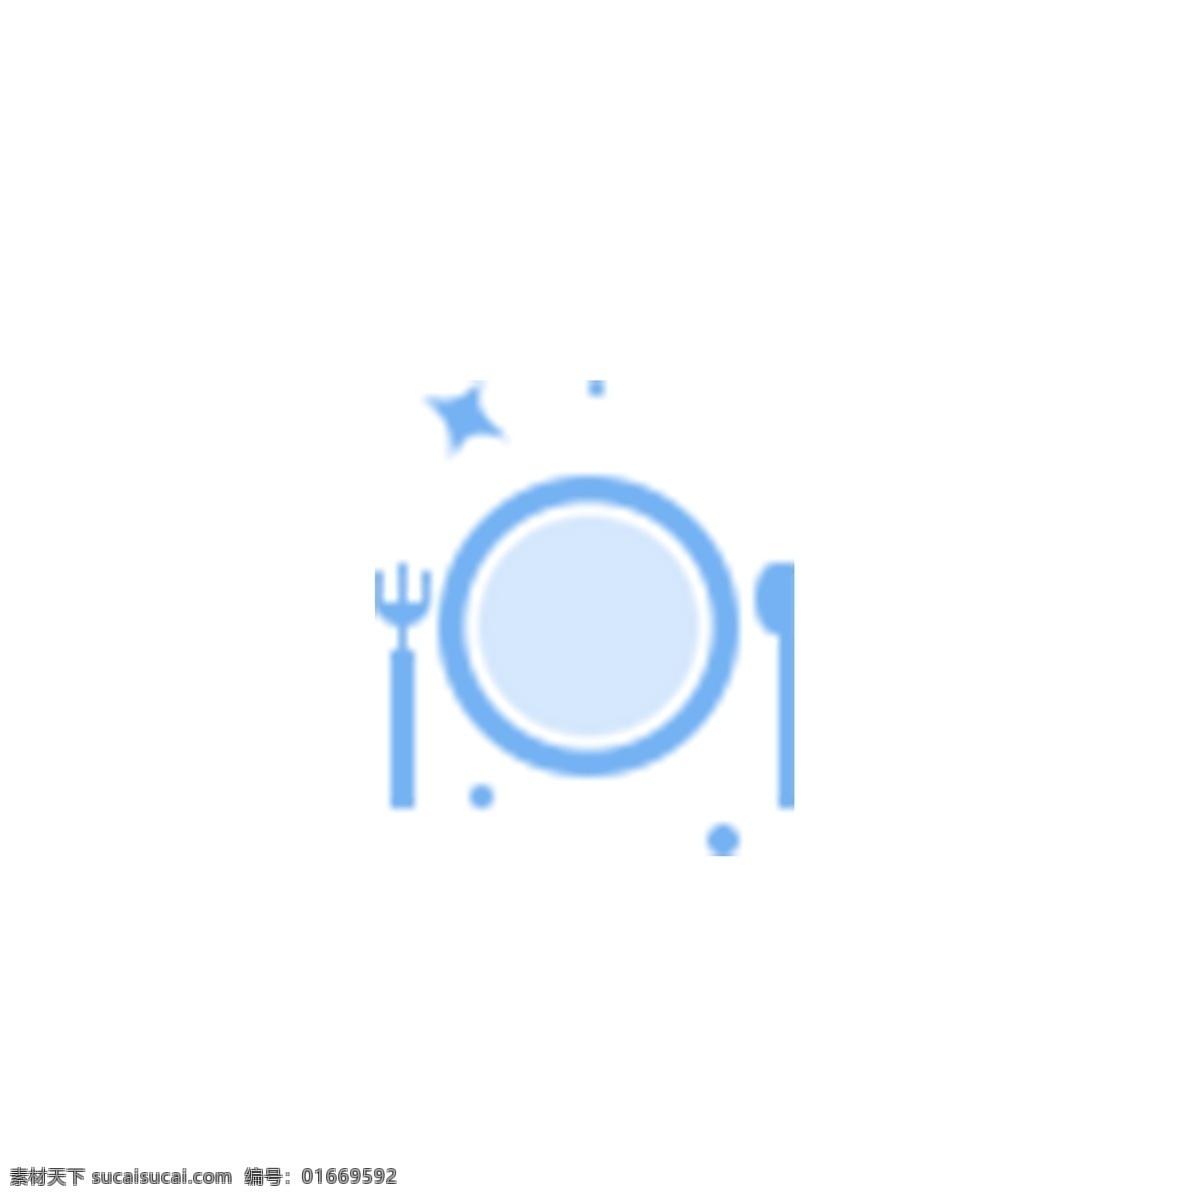 卡通 蓝色 餐具 免 抠 图 蓝色美食图标 ui应用图标 美食图标 餐具图案 网页图标 卡通图案 免抠图